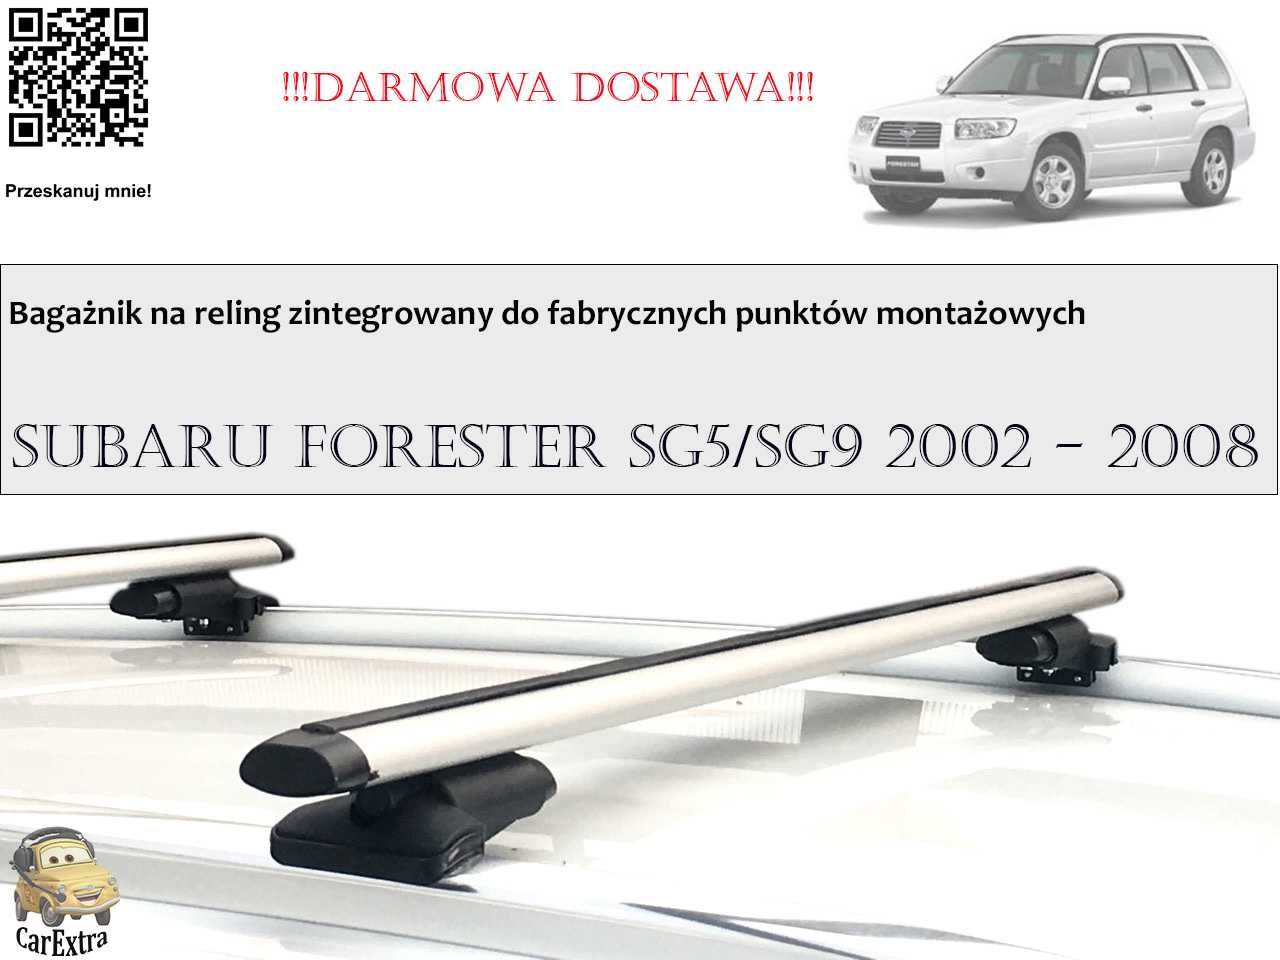 Bagażnik Dachowy Subaru Forester SG5/SG9 2002 - 2008